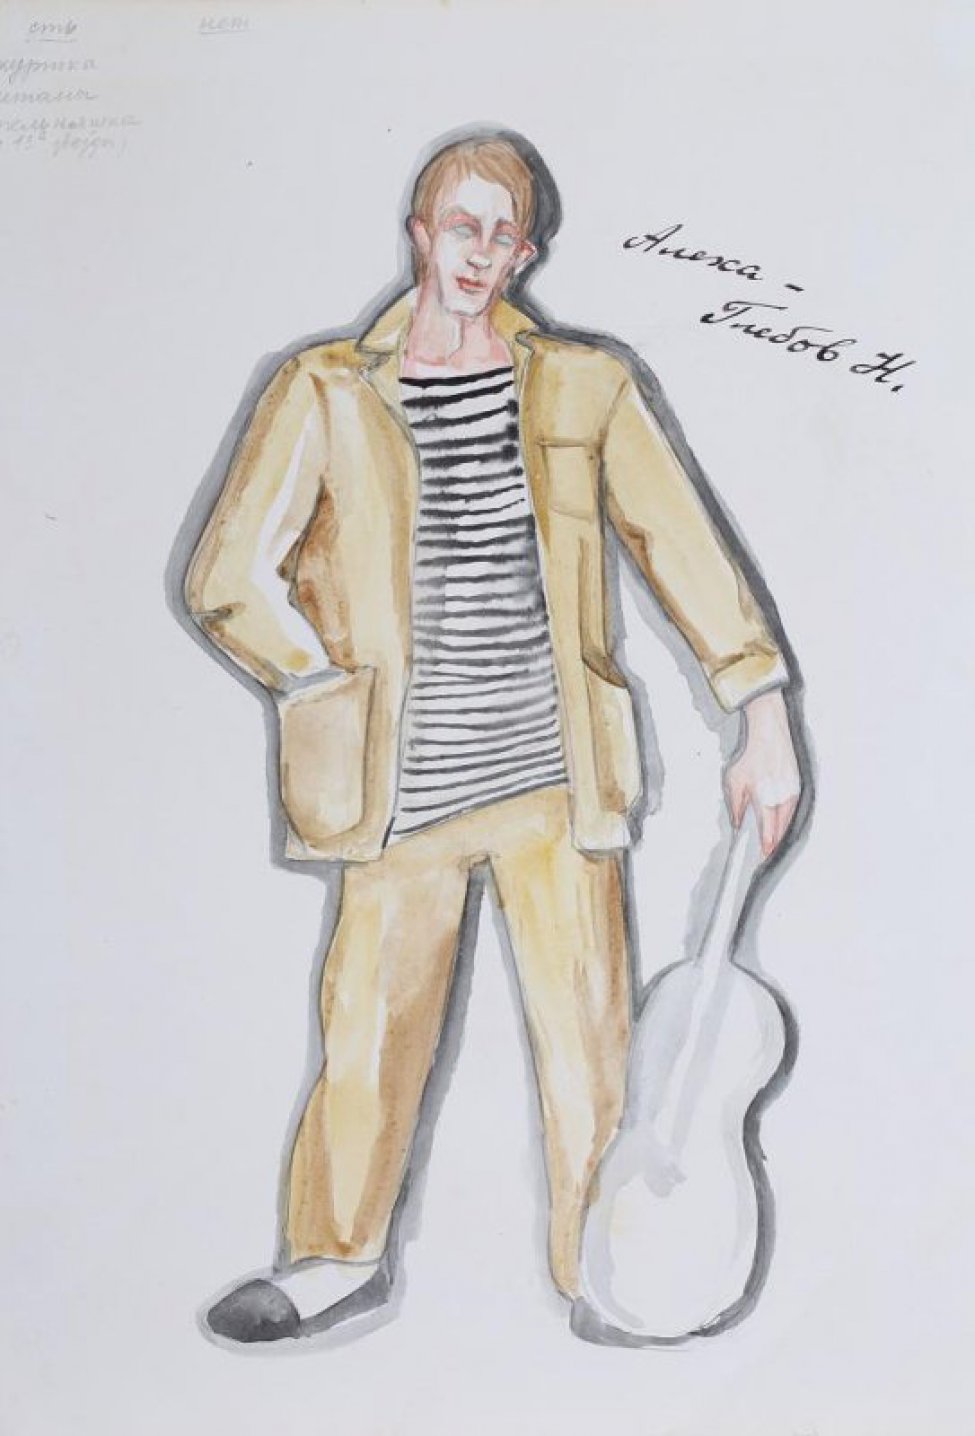 Изображен молодой человек в черно-белой тельняшке, светло-коричневой куртке и штанах, у левой ноги гитара.